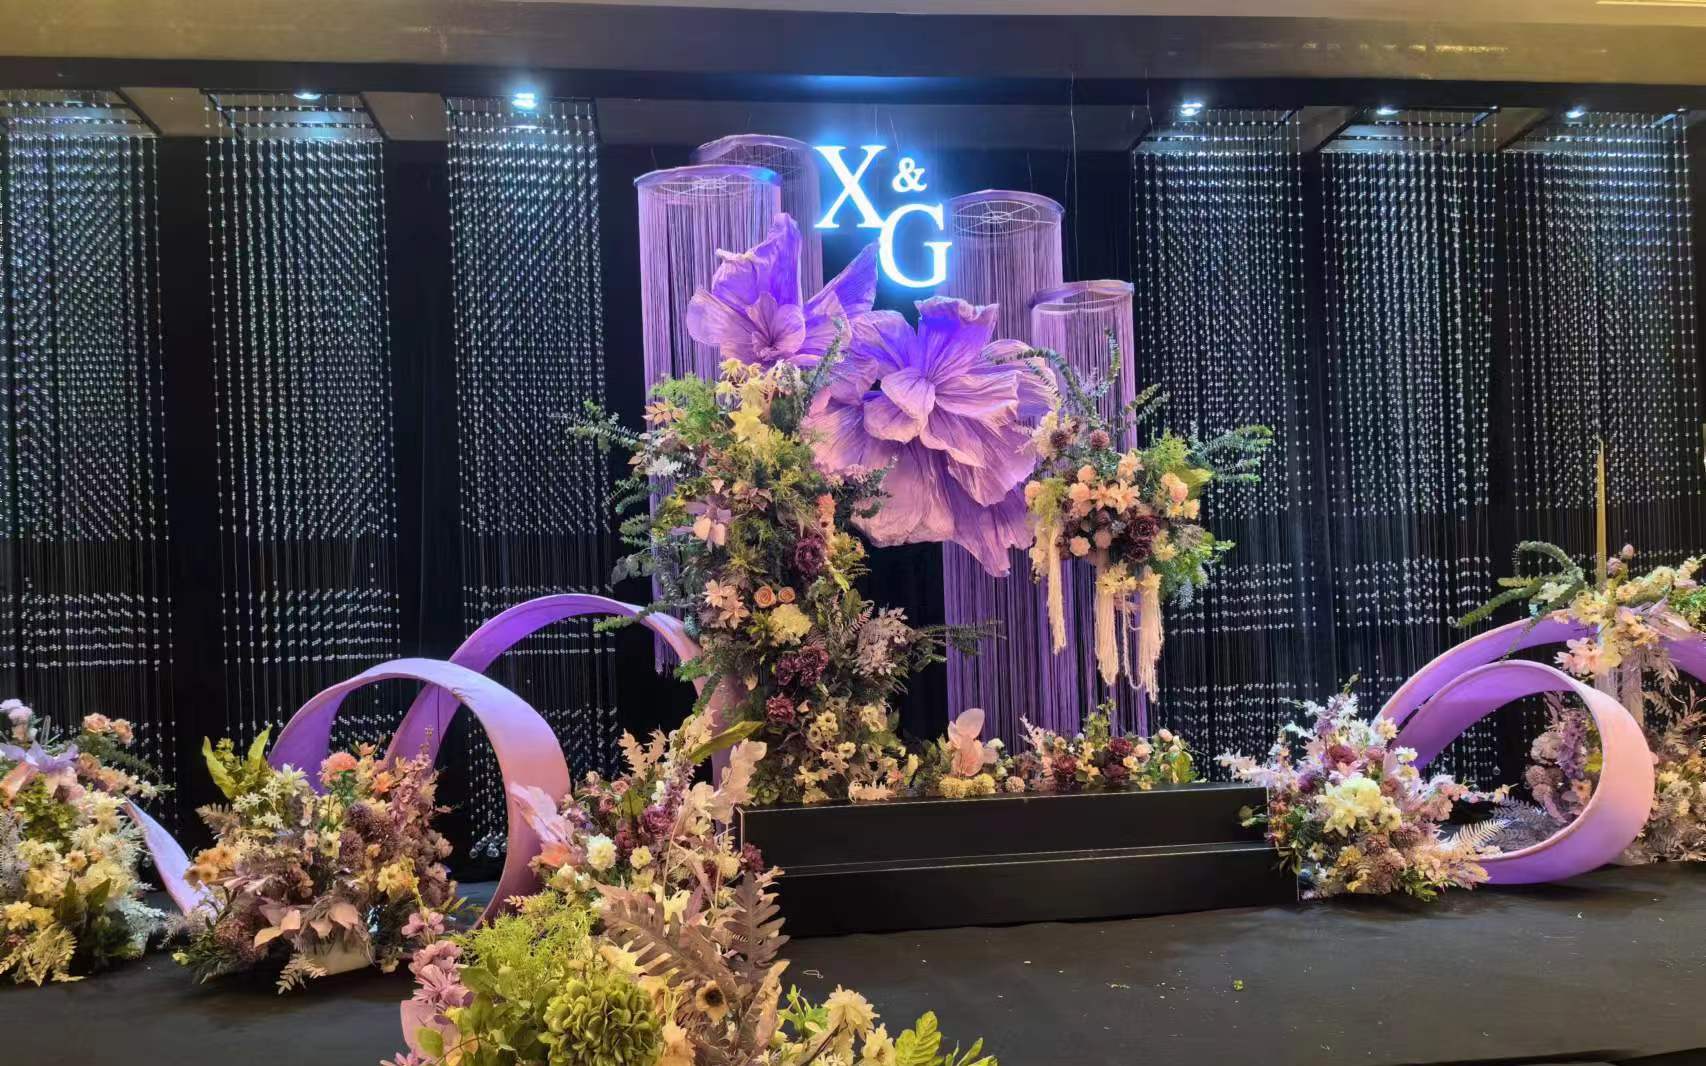 紫色水晶系列婚礼